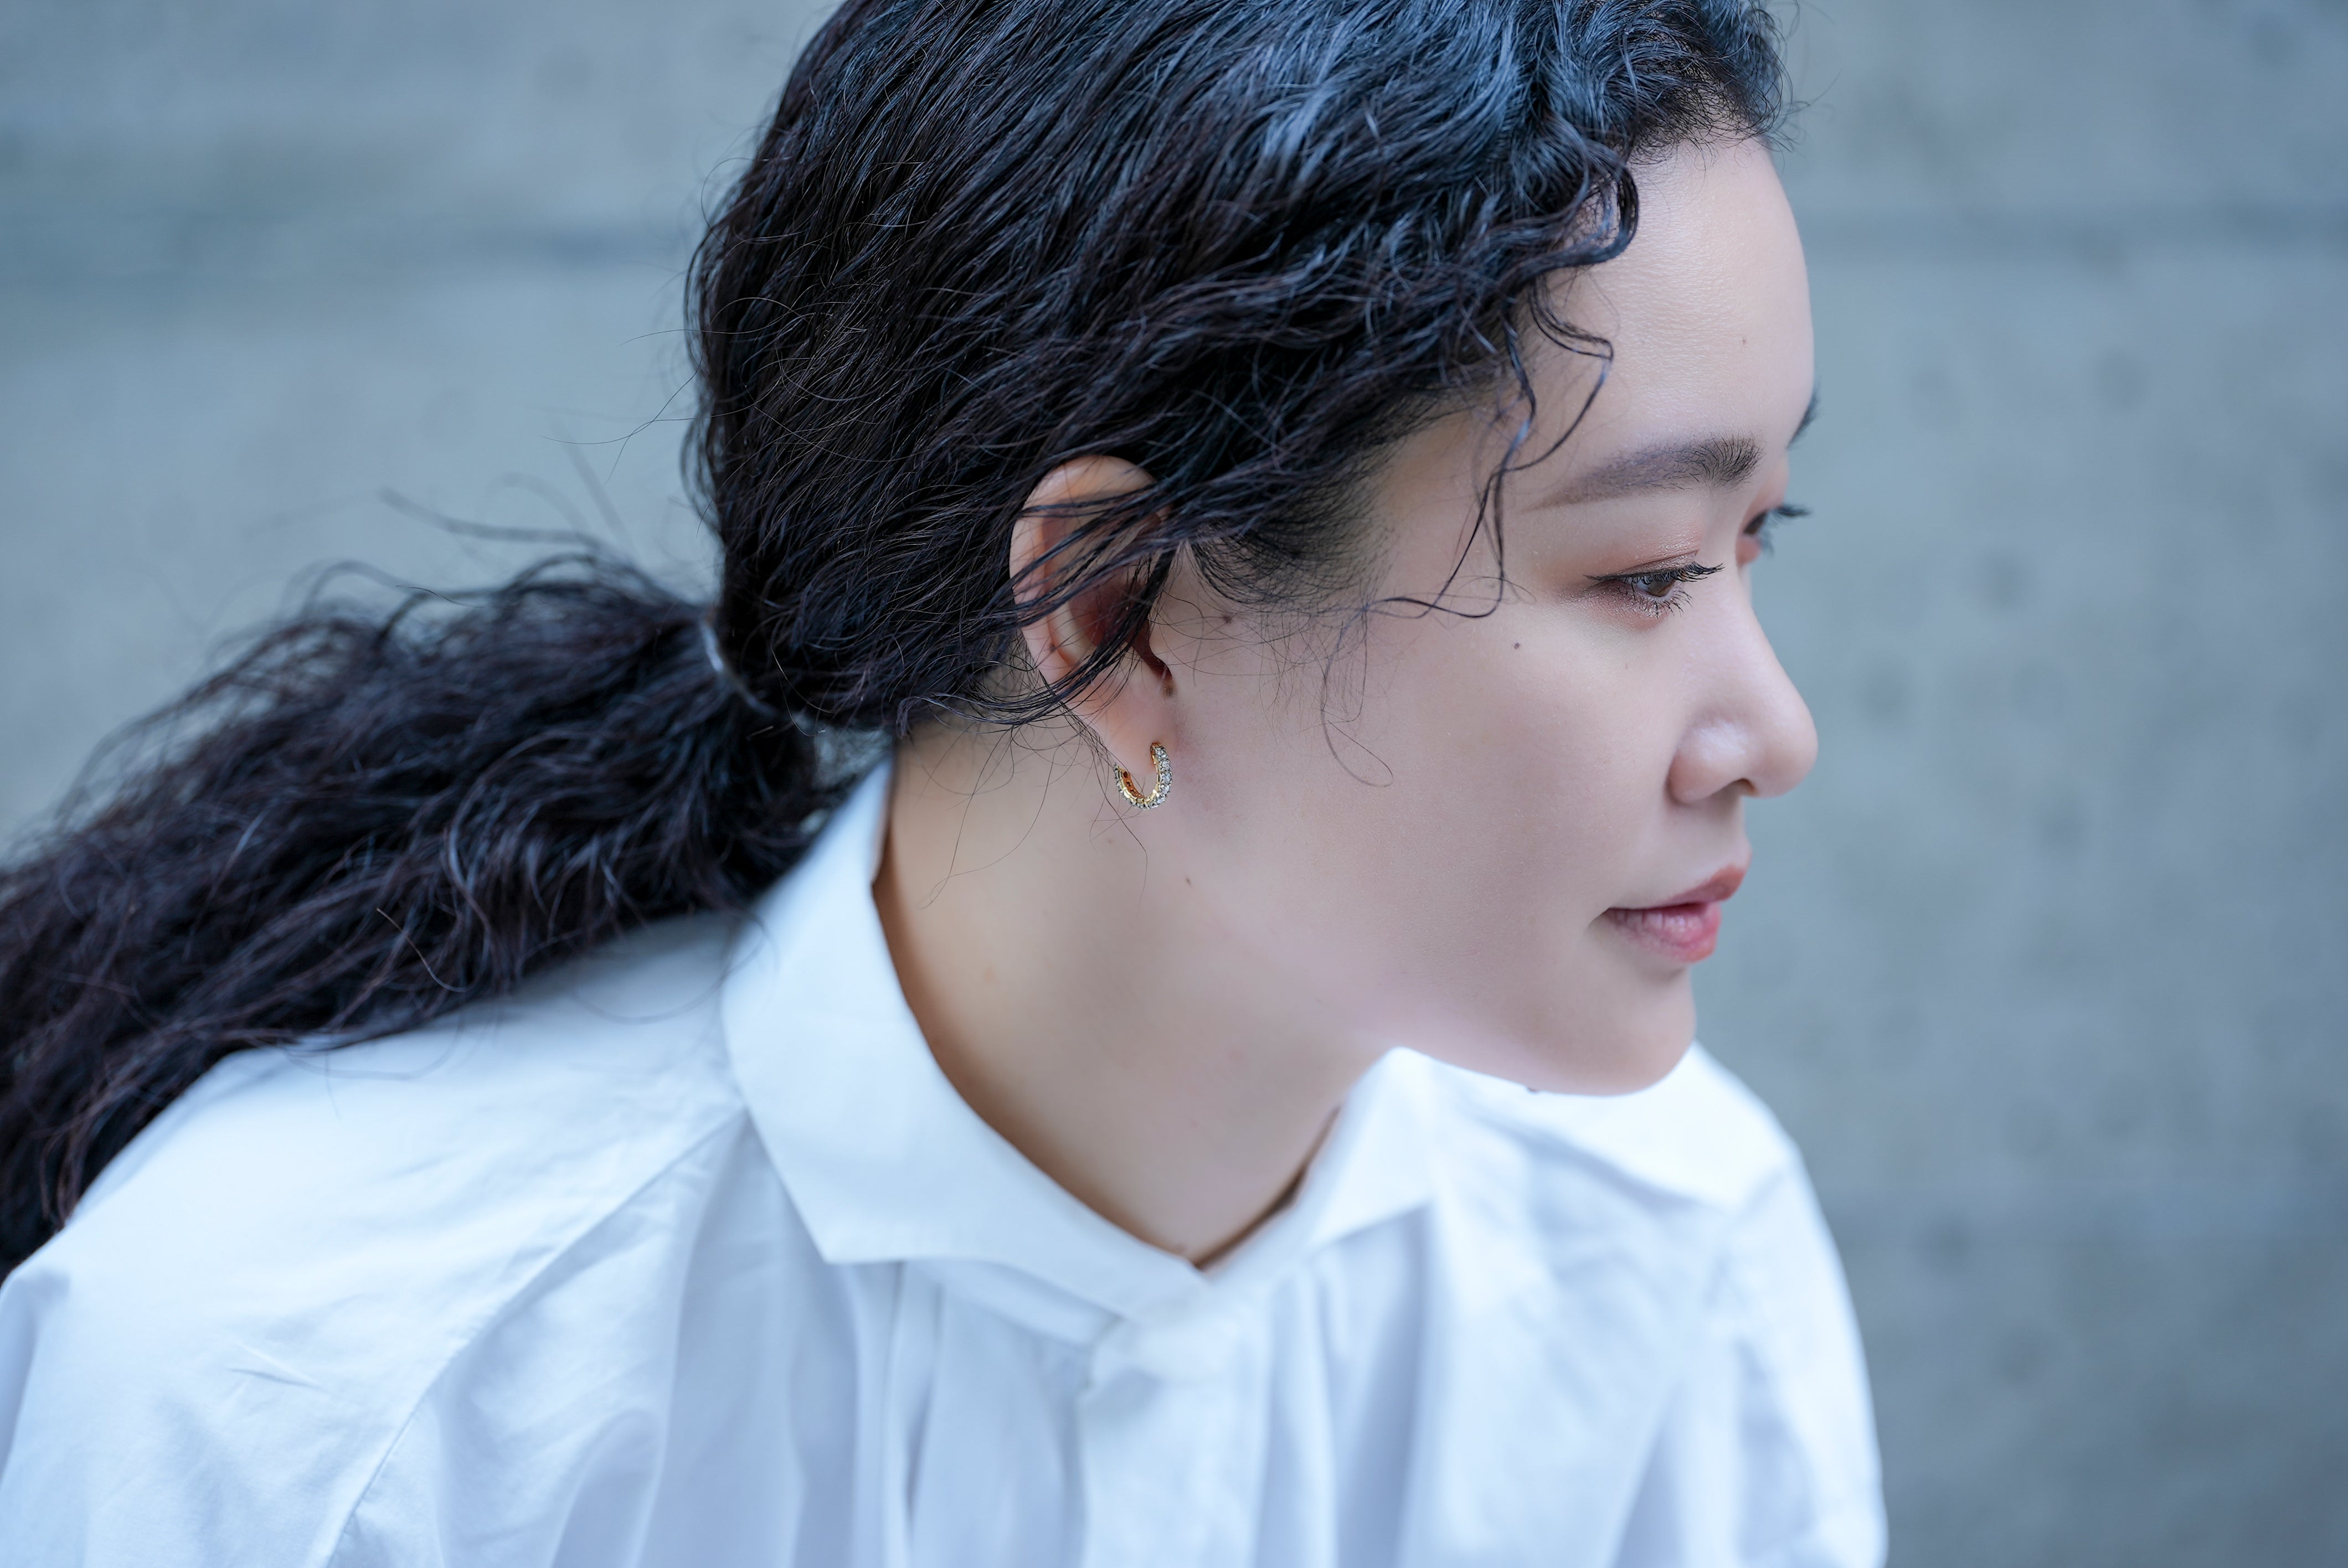 【受注生産】Rosecut Diamond Pierced earrings